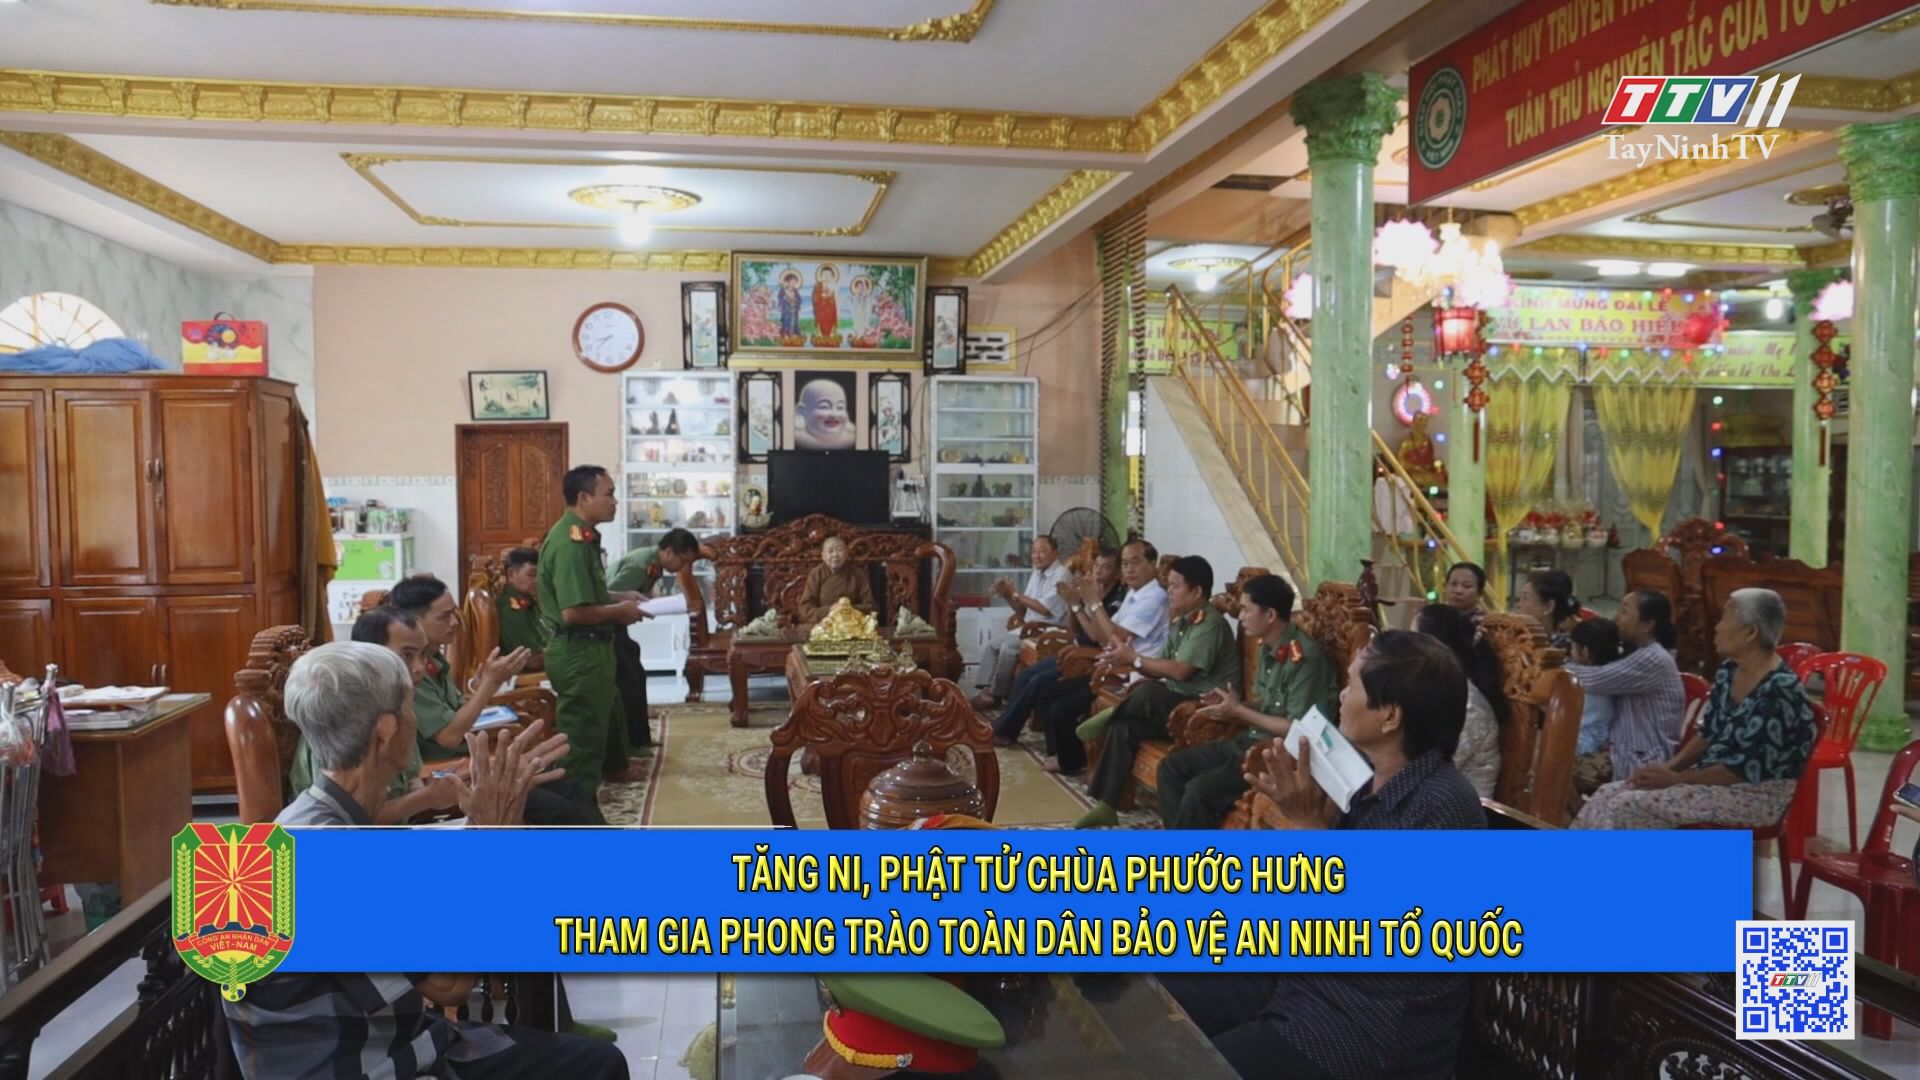 Tăng ni, phật tử Chùa Phước Hưng tham gia phong trào toàn dân bảo vệ an ninh tổ quốc | An ninh Tây Ninh | TayNinhTV